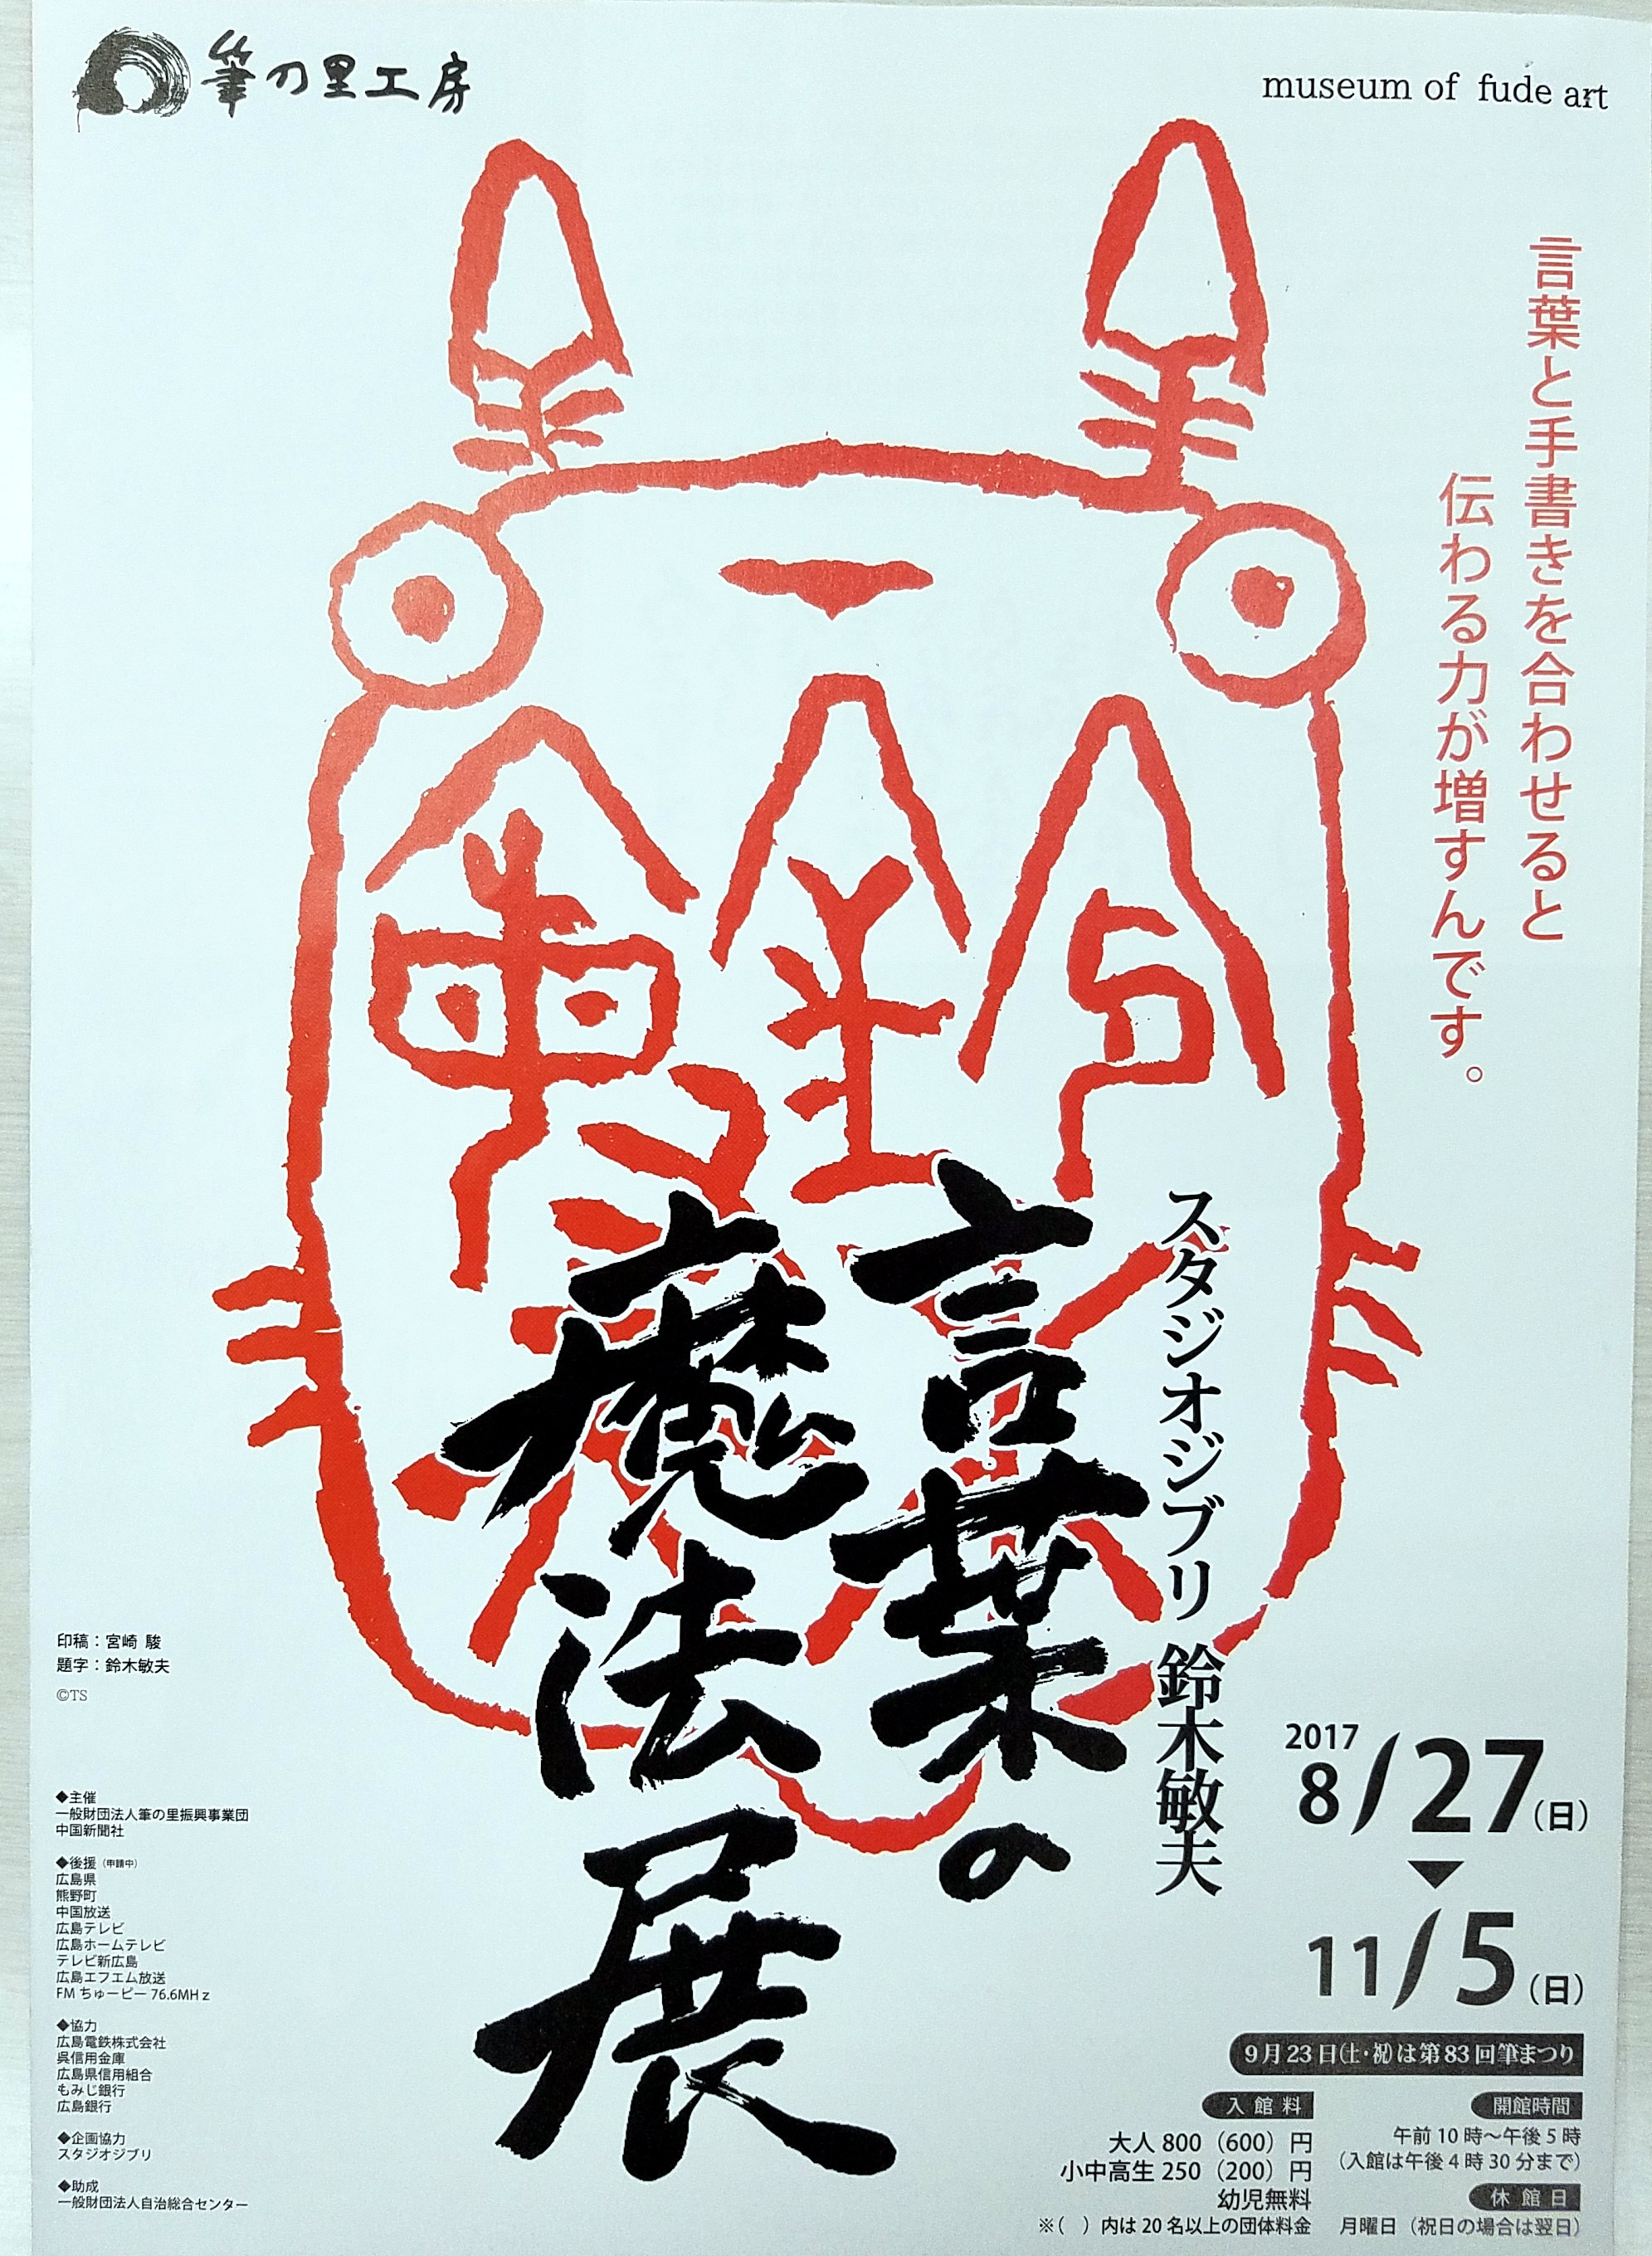 スタジオジブリ鈴木敏夫「言葉の魔法展」は１１月５日まで。